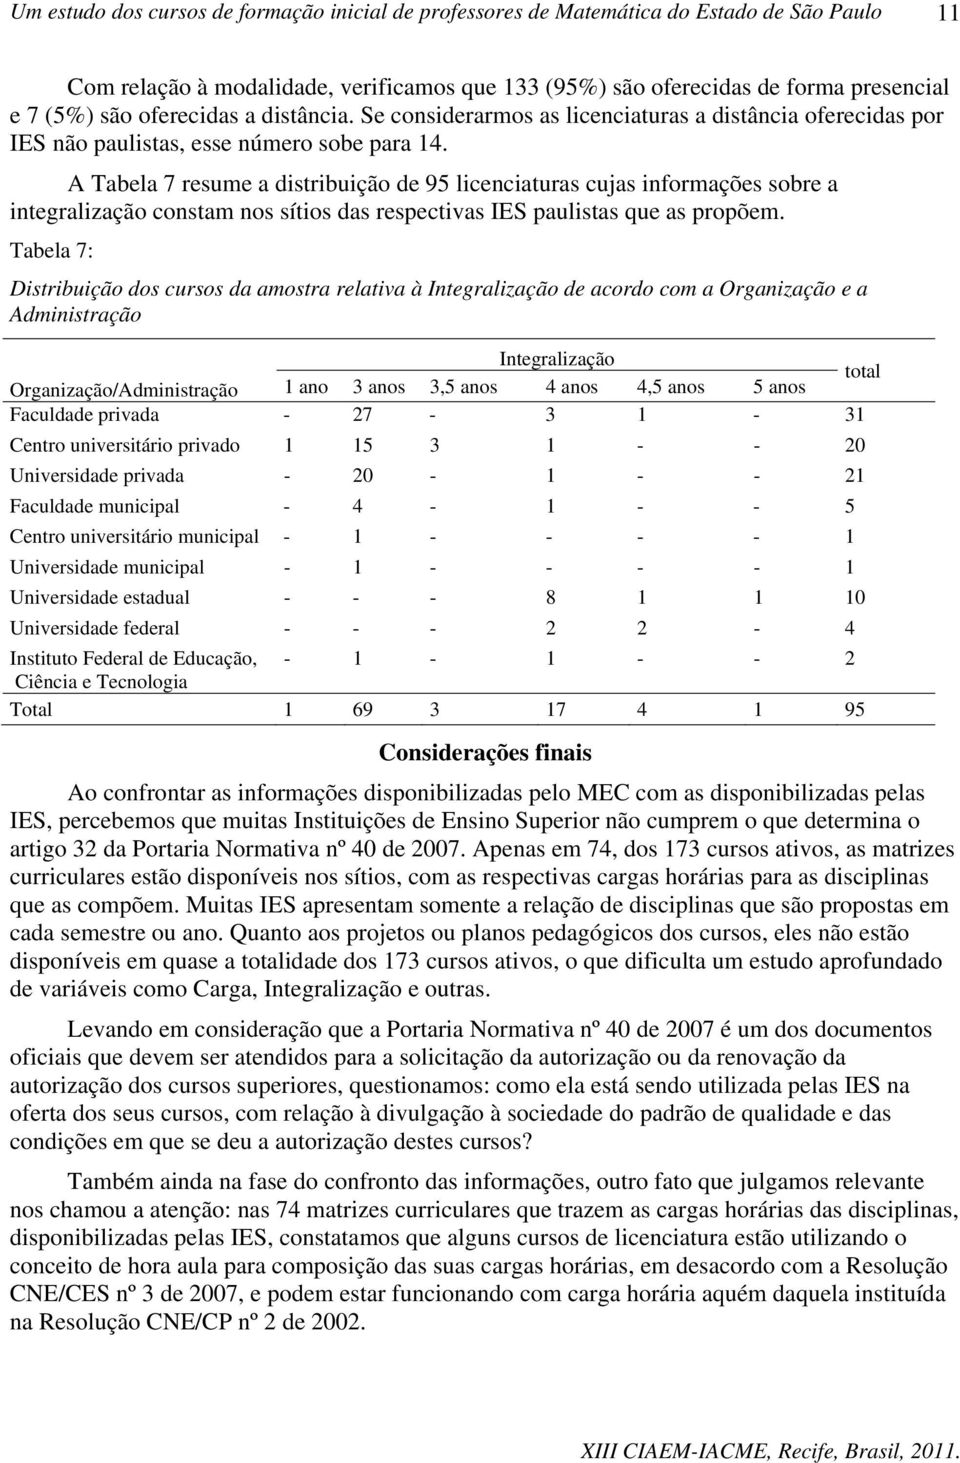 A Tabela 7 resume a distribuição de 95 licenciaturas cujas informações sobre a integralização constam nos sítios das respectivas IES paulistas que as propõem.